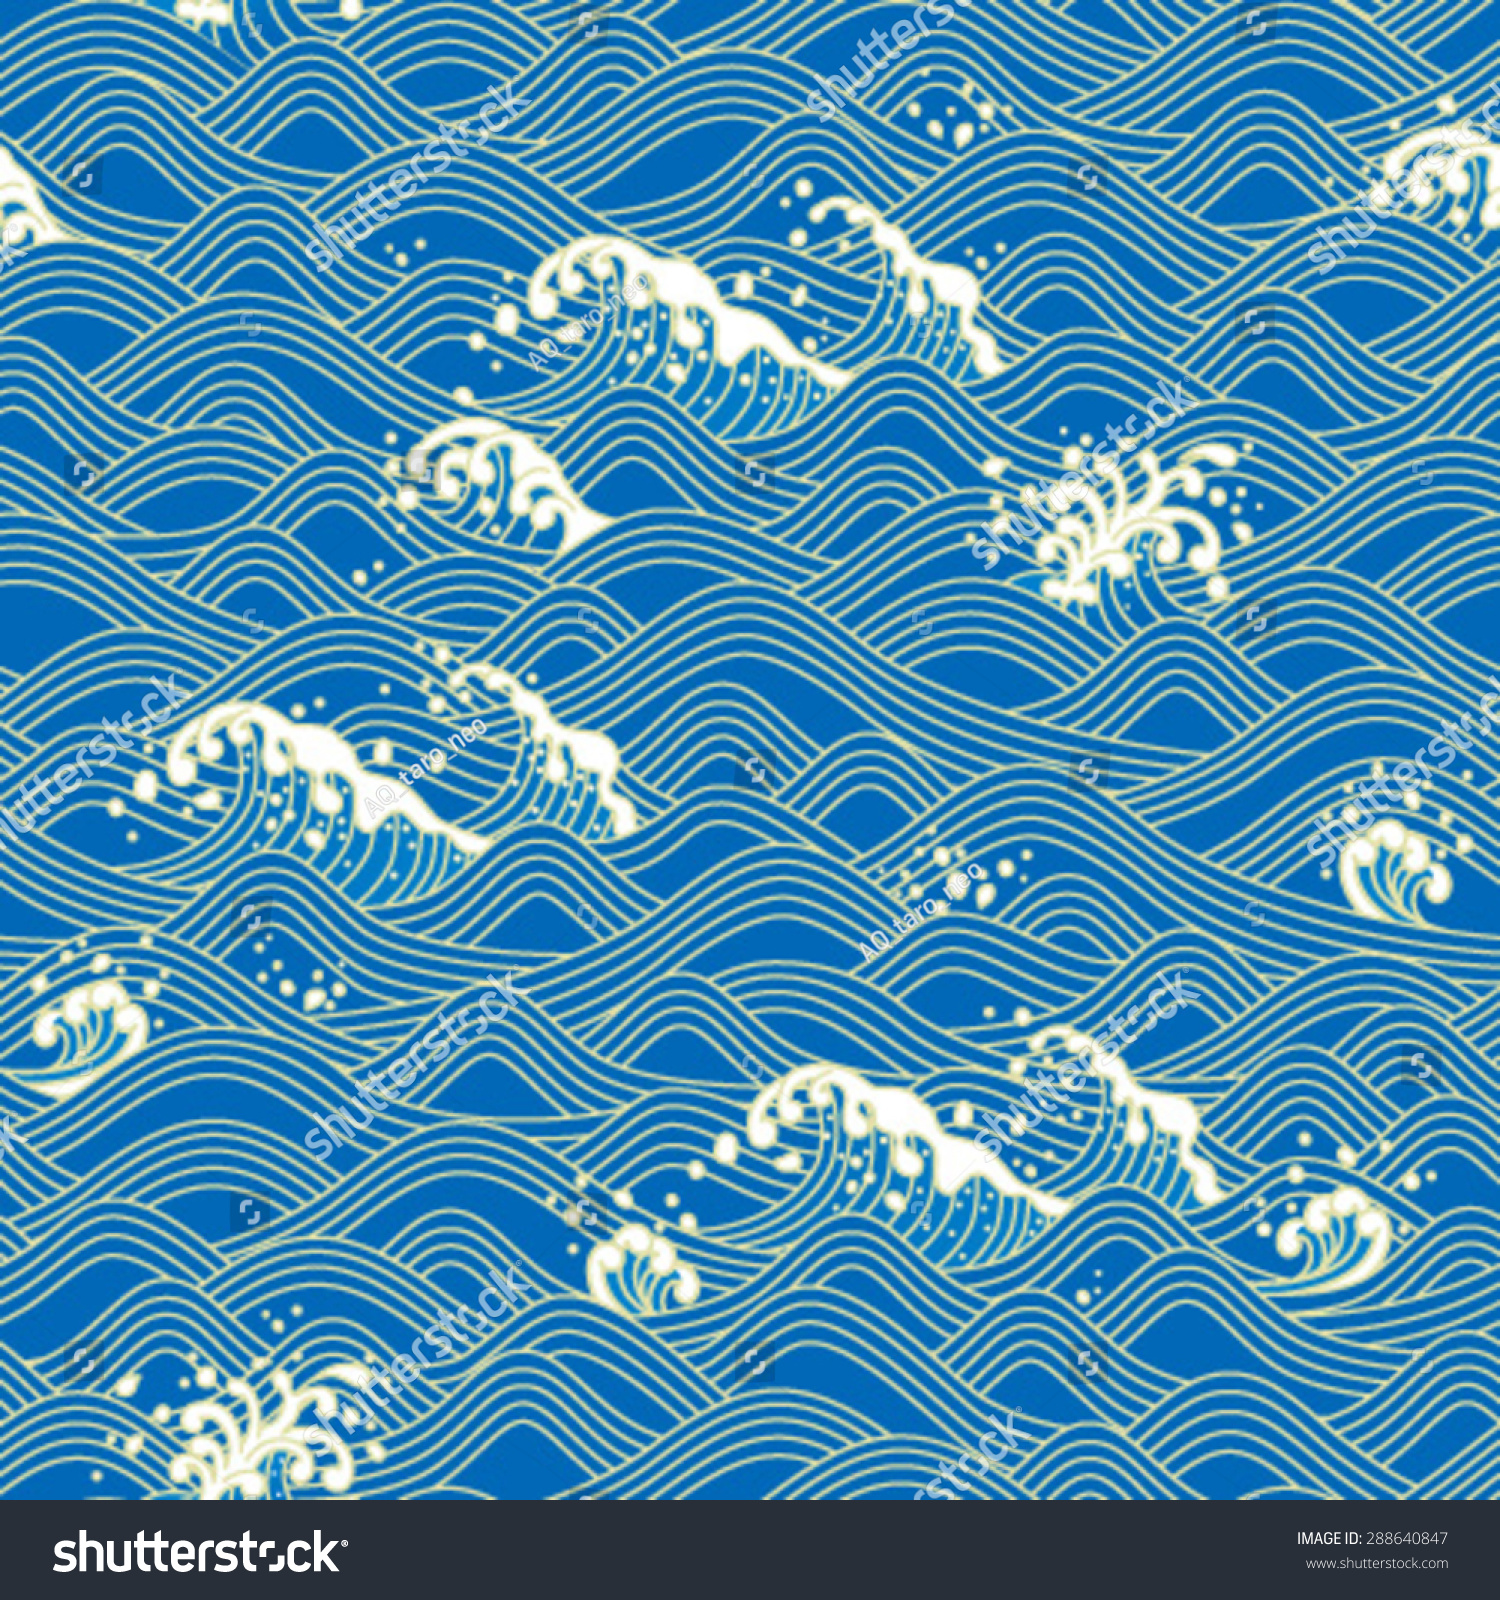 日本の伝統文様 青海波 のベクター画像素材 ロイヤリティフリー